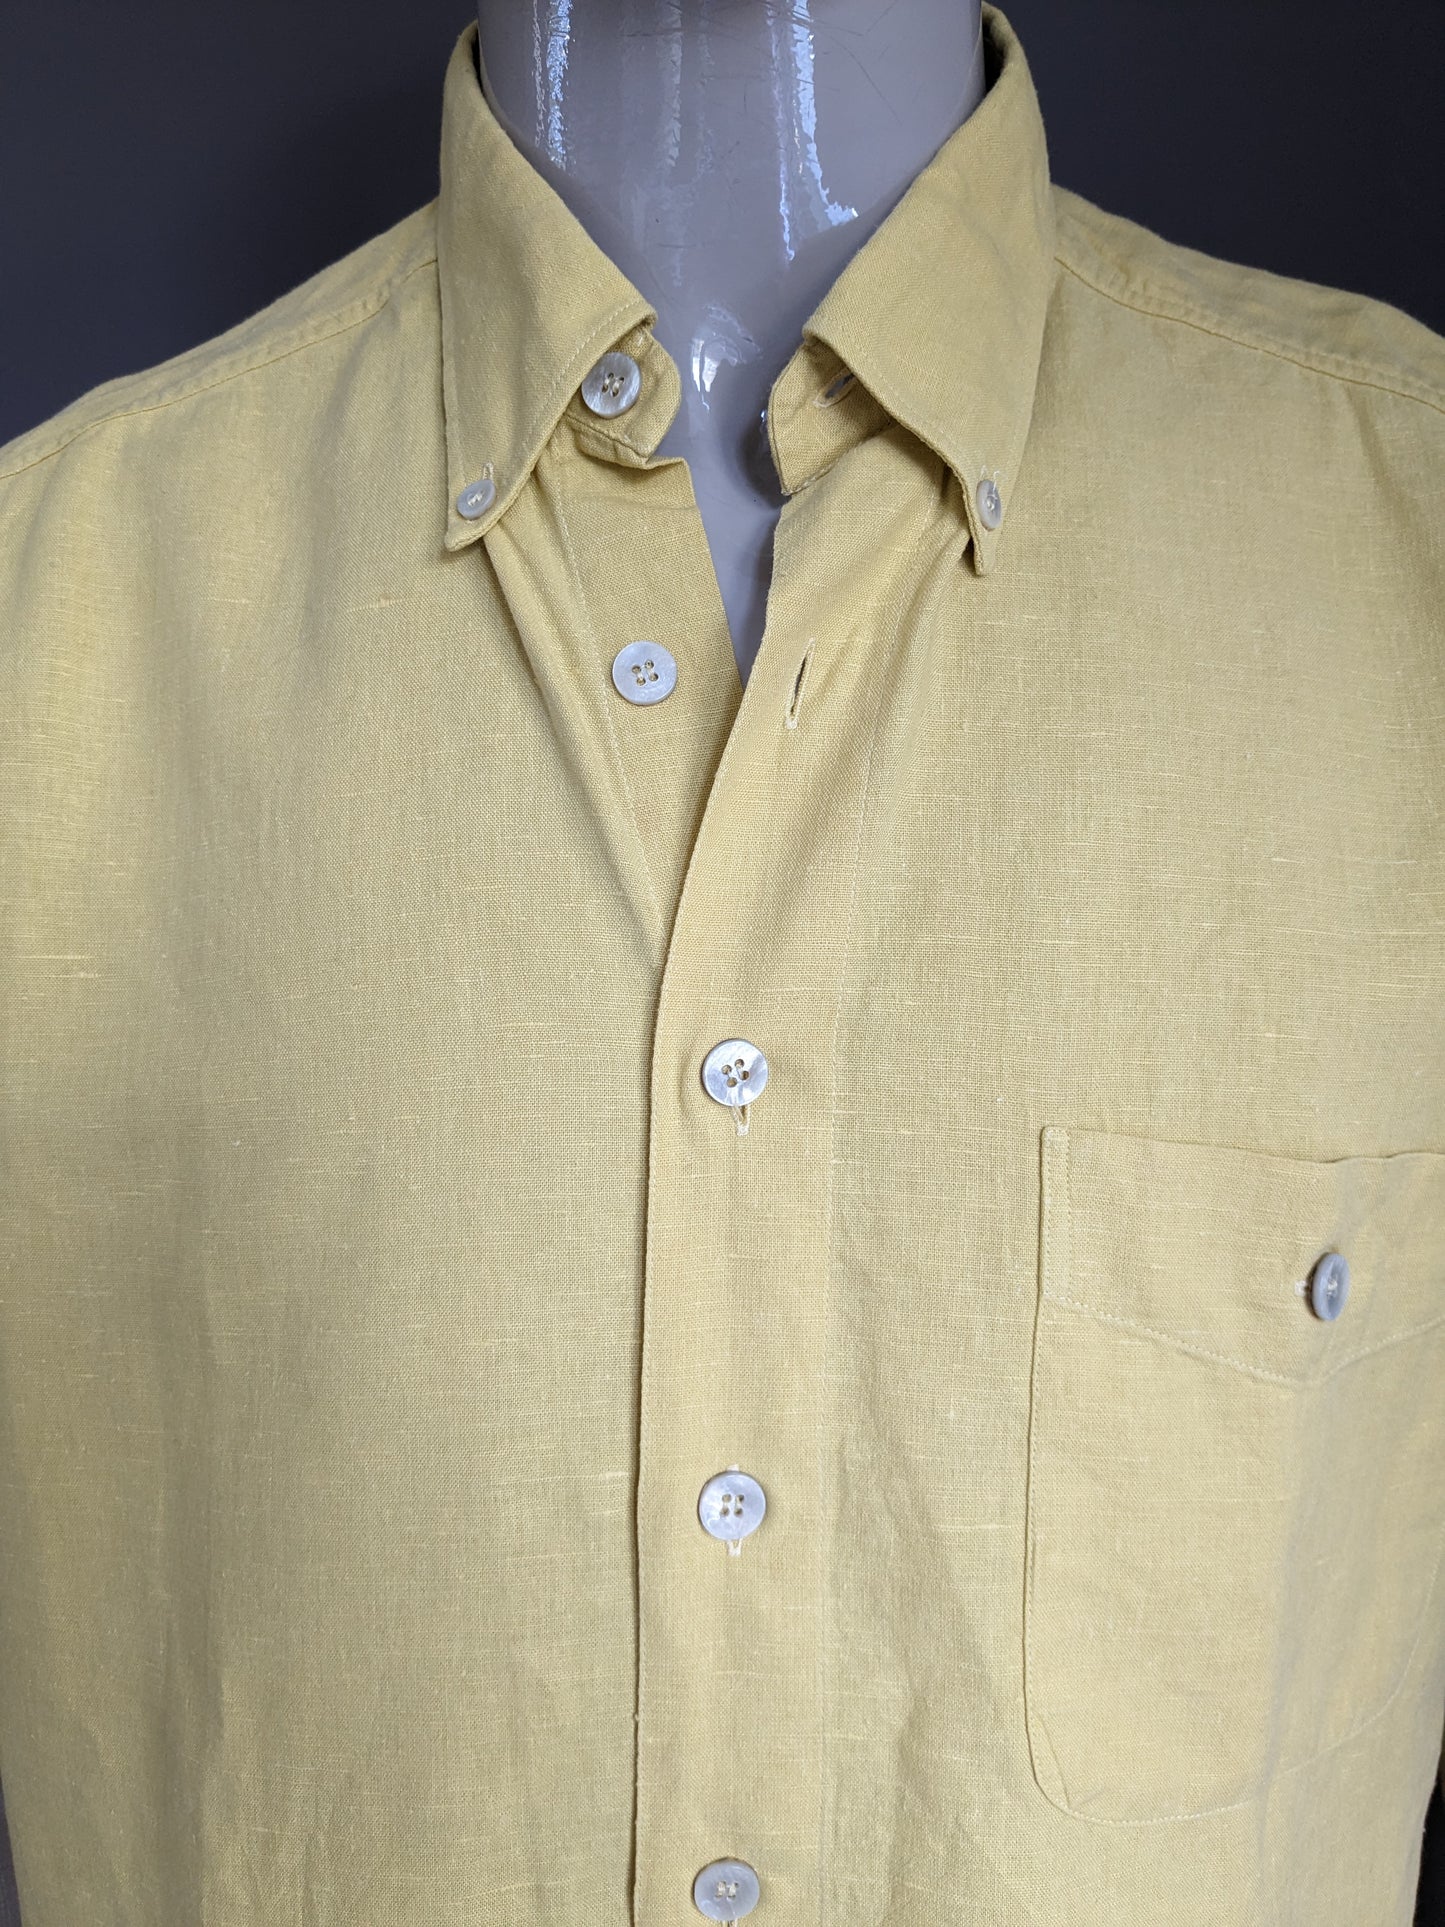 Camisa de lino exklusiv de Pohland Vintage con botones más grandes. Color amarillo. Tamaño 2xl / xxl.